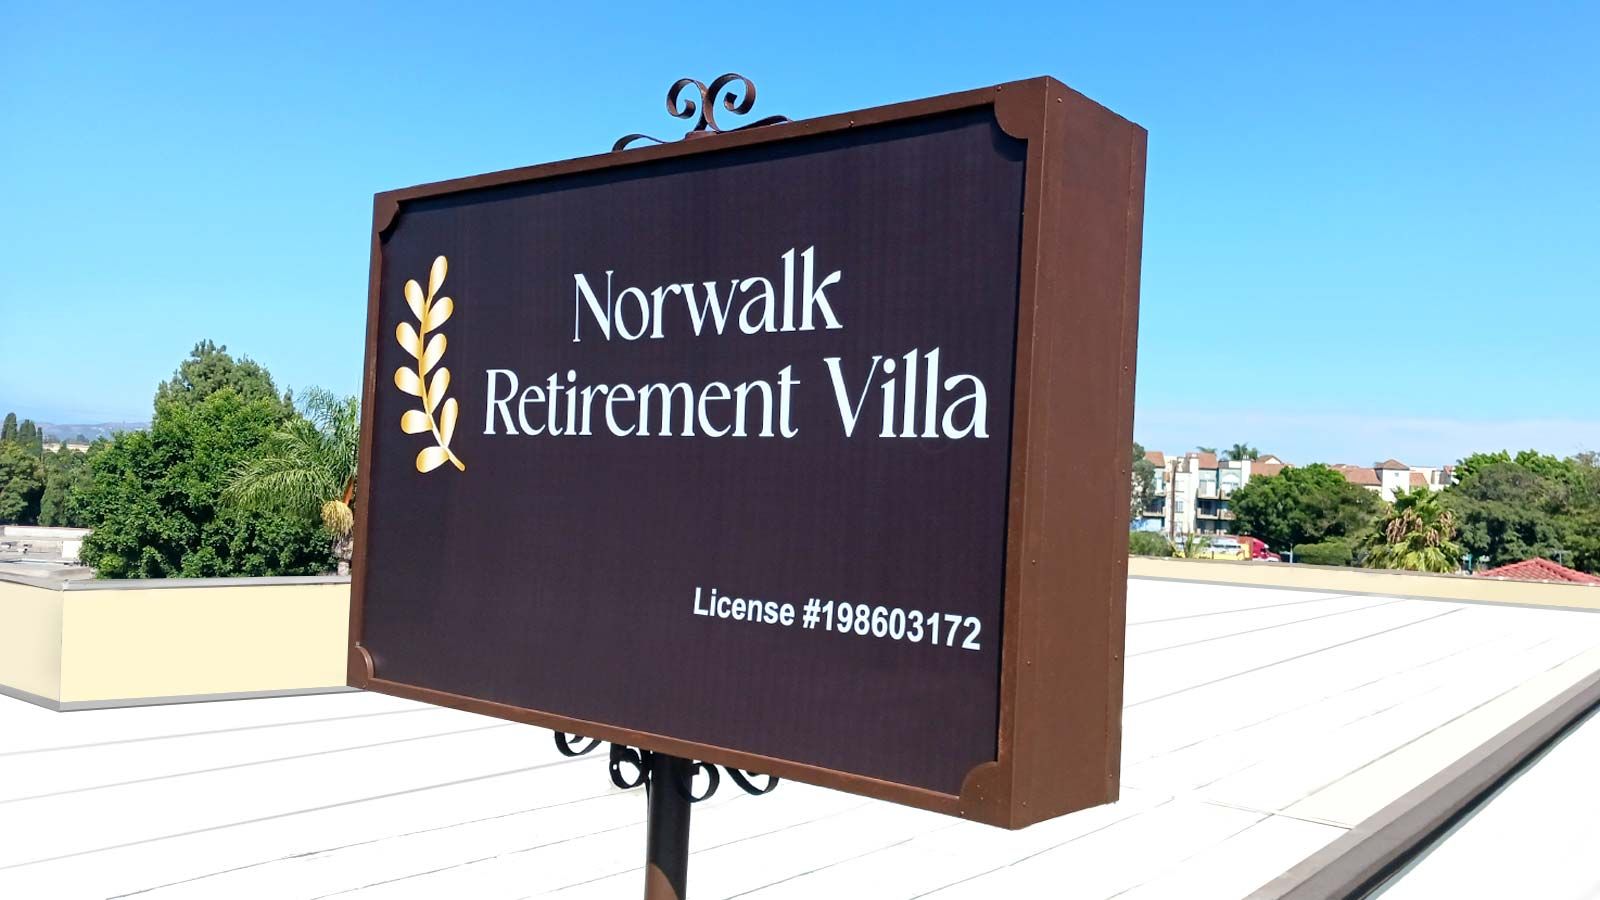 Norwalk Retirement Villa pylon sign remplacement